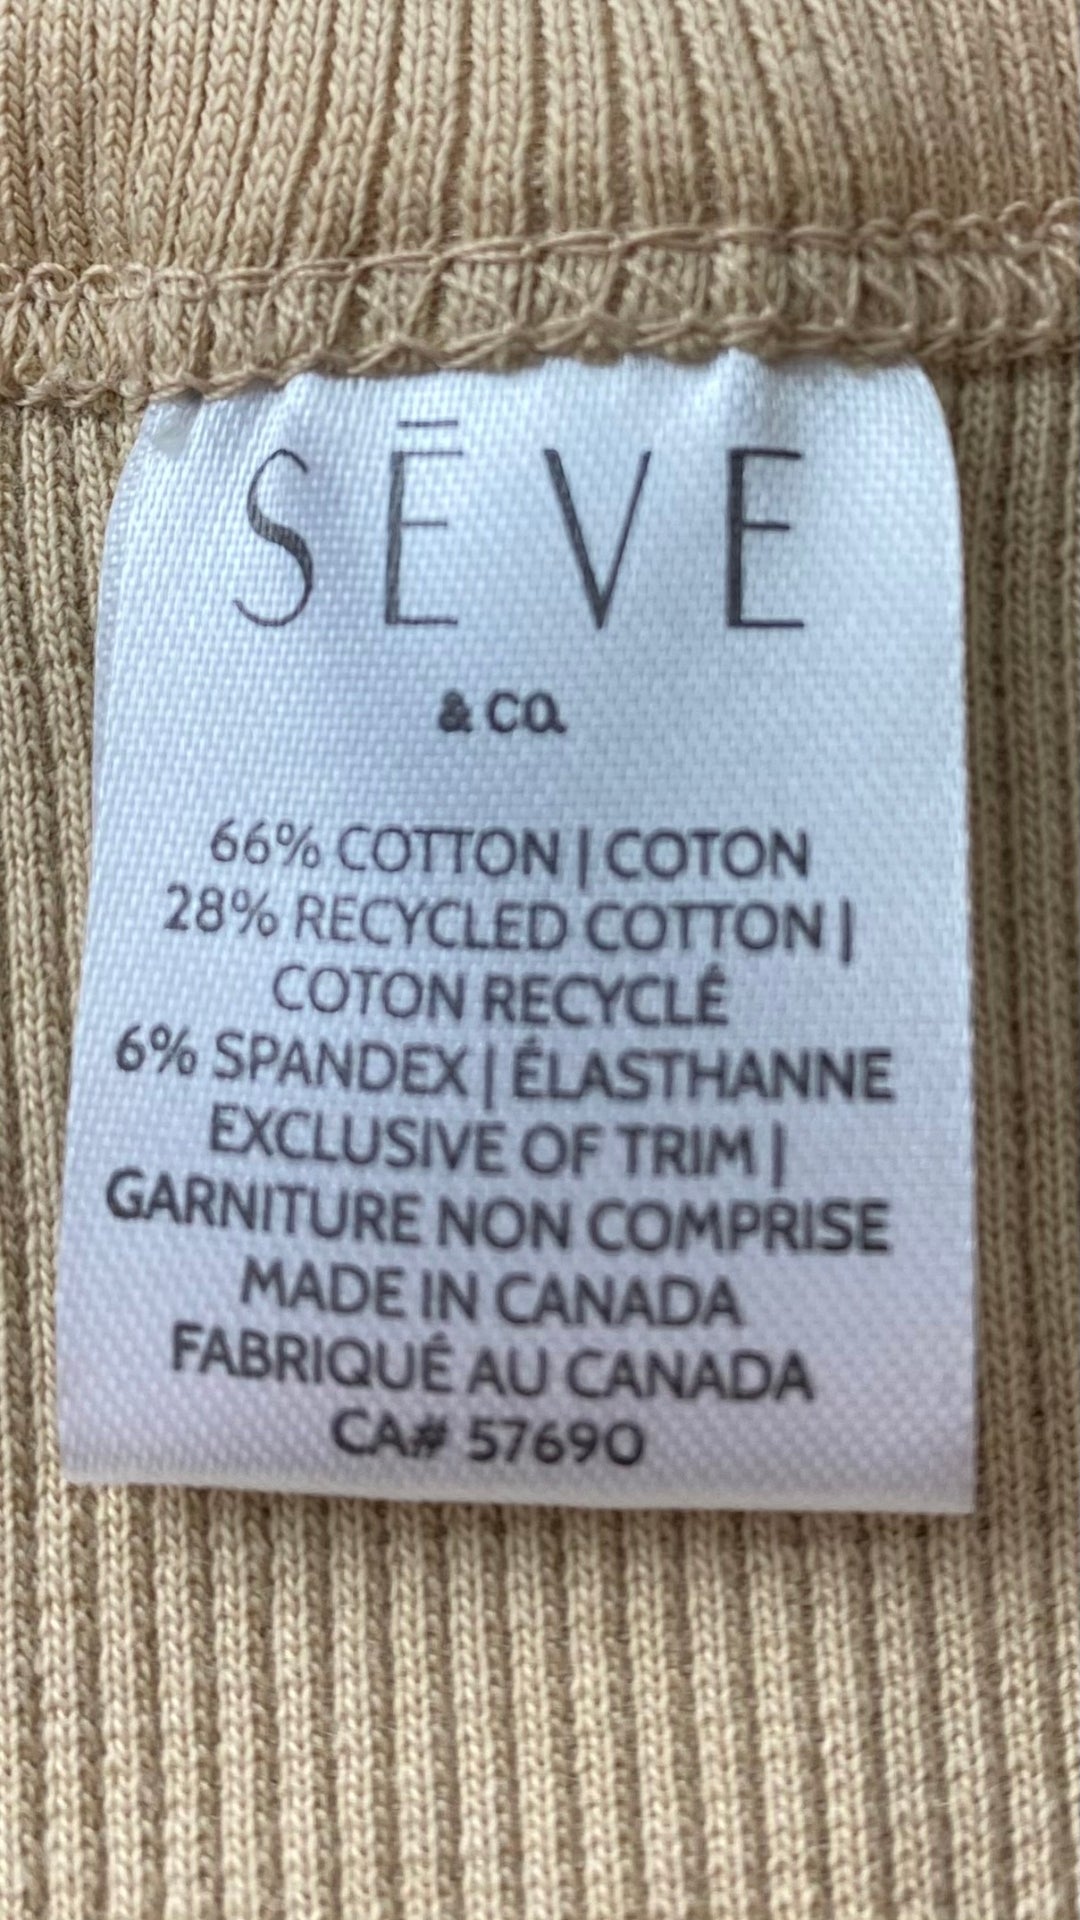 Camisole côtelée de base beige, Seve&Co, neuve. Vue de l'étiquette de marque et composition.